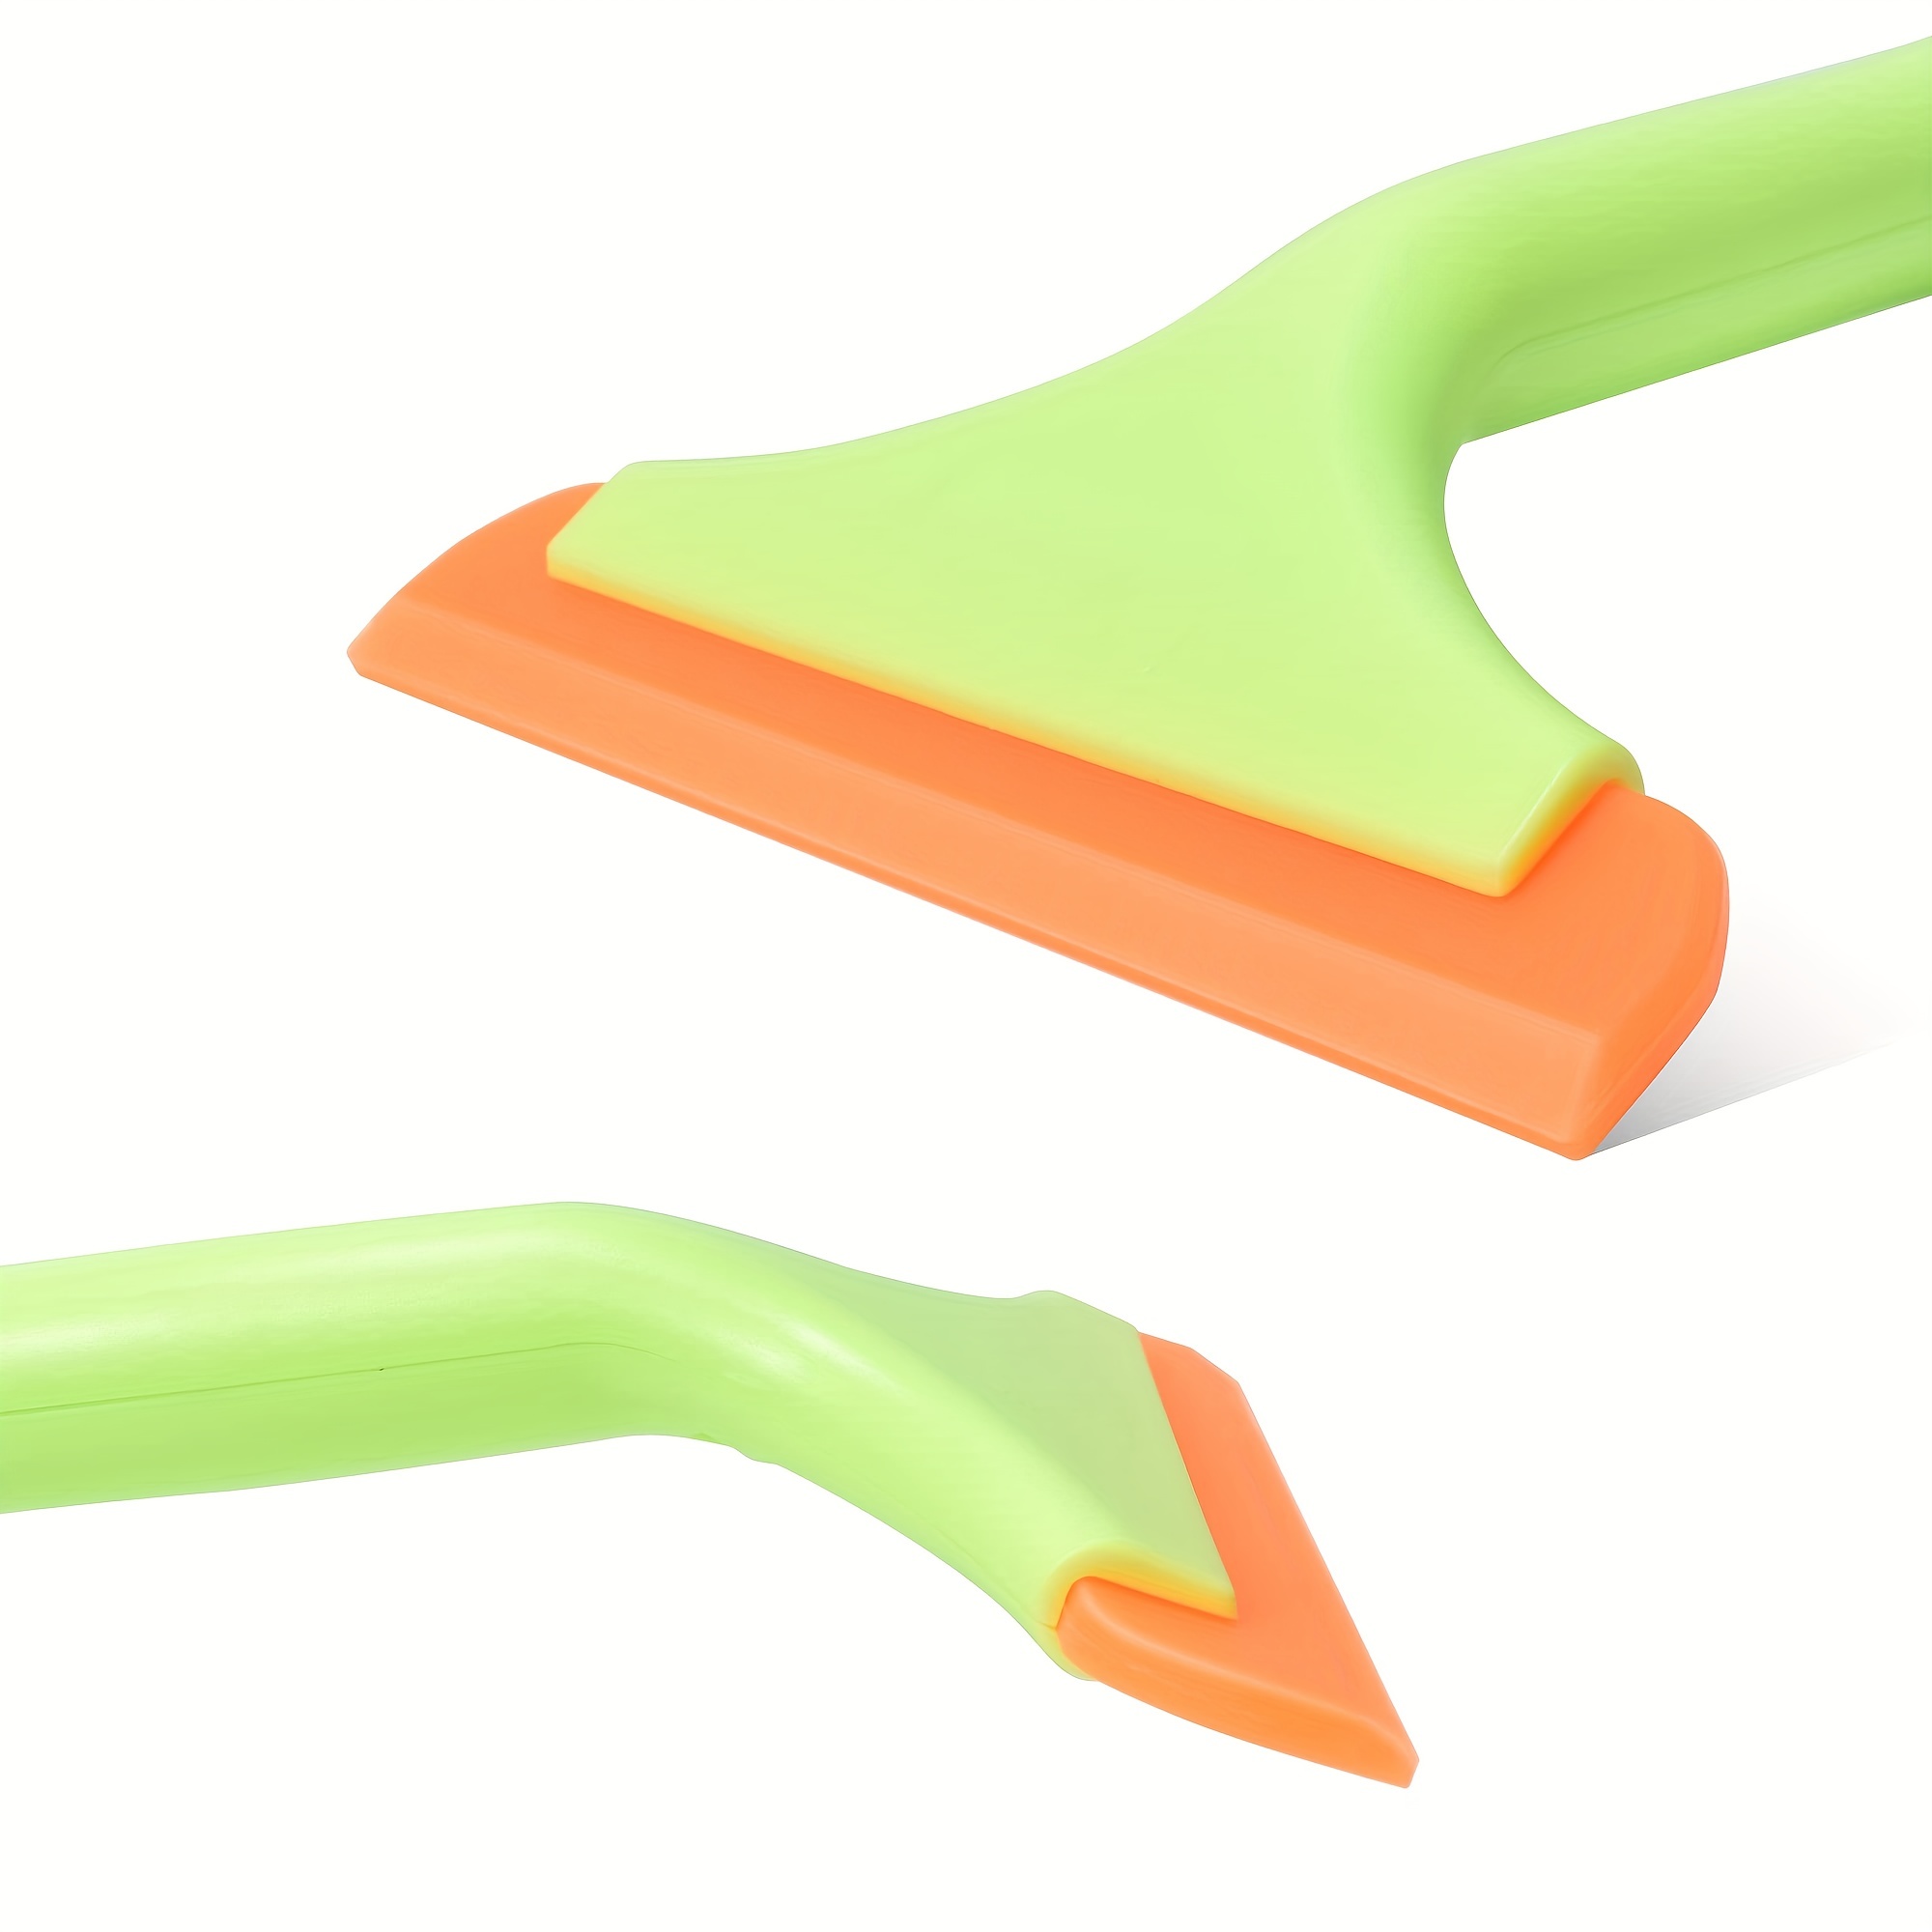 3 Stück (grün) Silikon-Rakel, flexibler kleiner Gummi-Rakel, Wasserwischer,  Duschrakel, Auto-Wasserklinge, Fenstertönungsrakel für